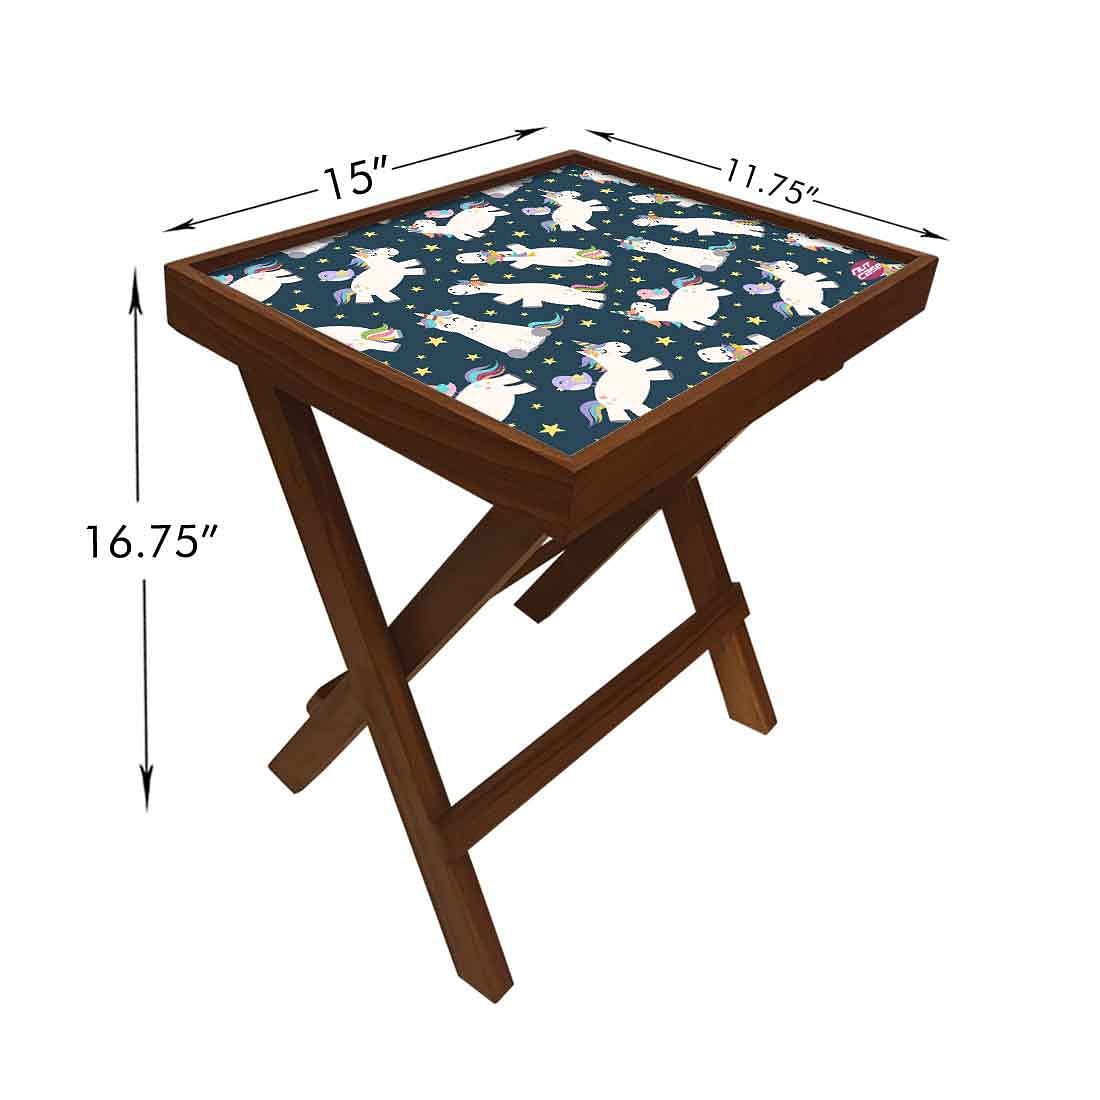 Folding Side Table - Teak Wood -White Unicorn Nutcase